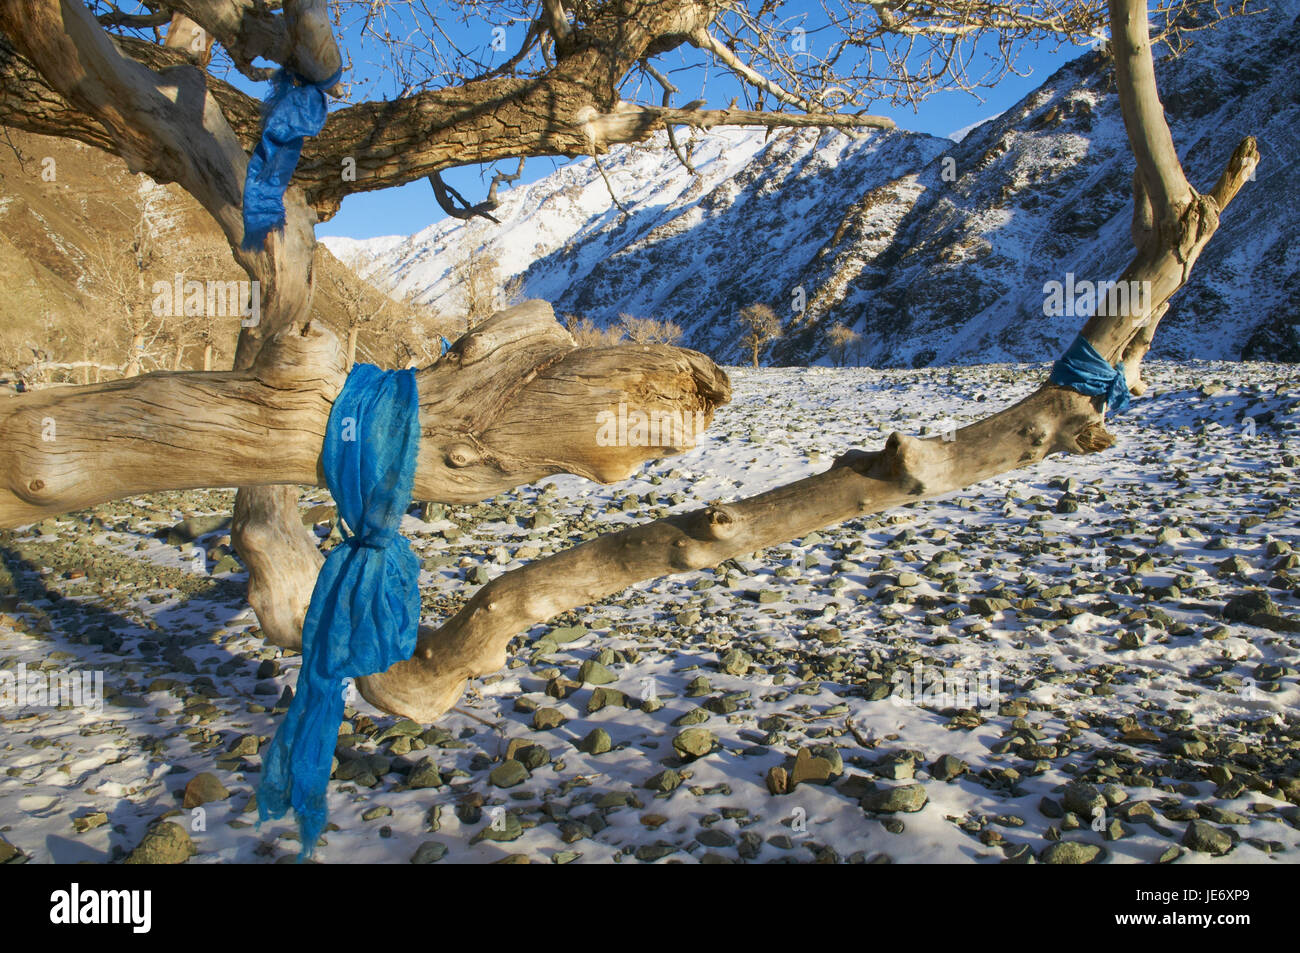 Mongolia, Khovd provincia, paesaggio invernale, albero, cordoni bleu, Khatag, tradizionale saluto sciarpa, Foto Stock